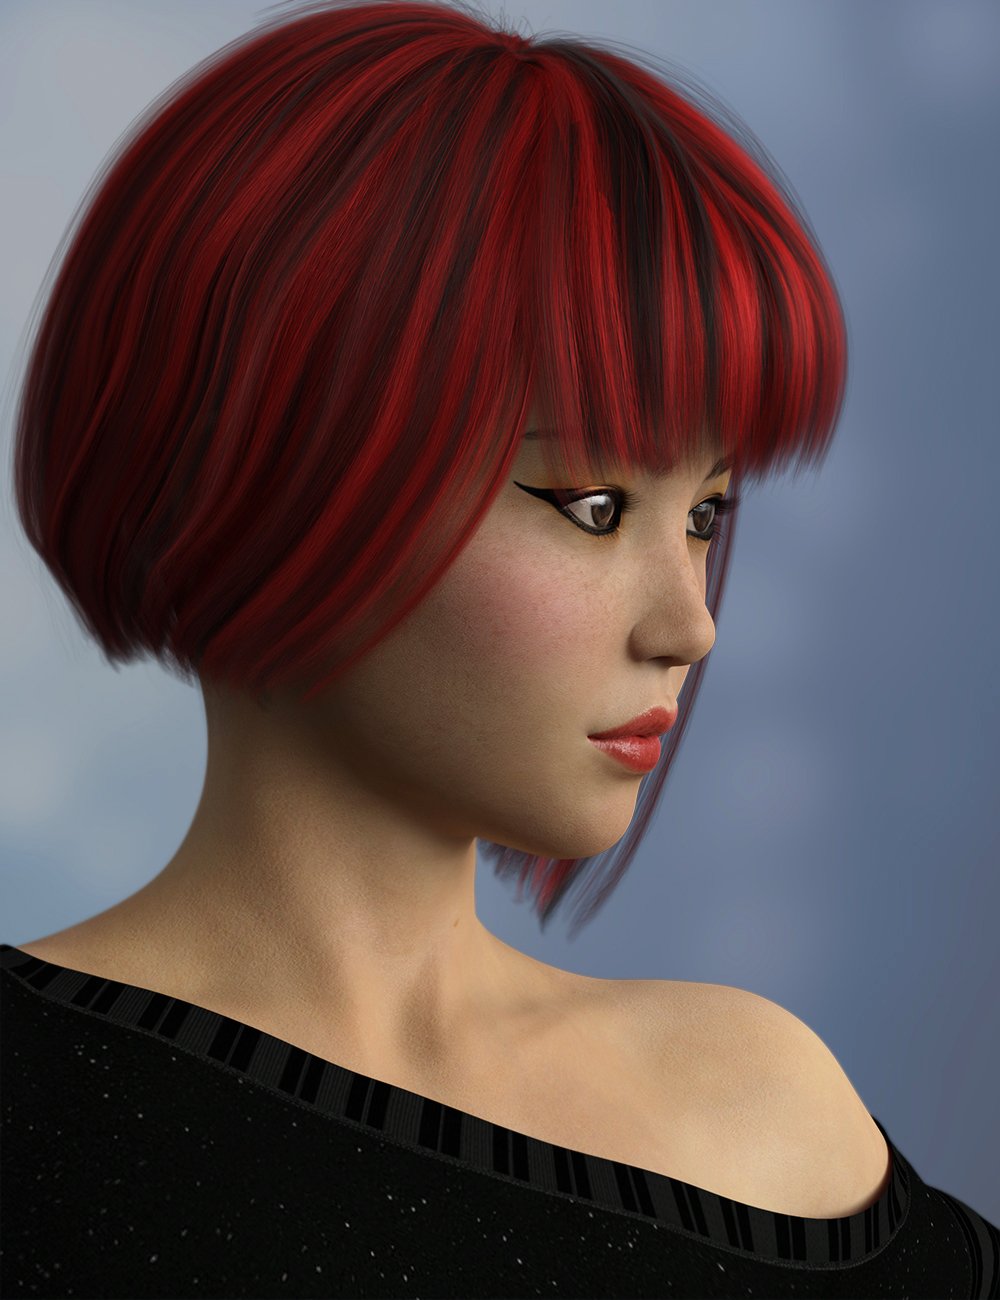 Teen Miyu HD for Mei Lin 8 by: Fred Winkler ArtSabby, 3D Models by Daz 3D